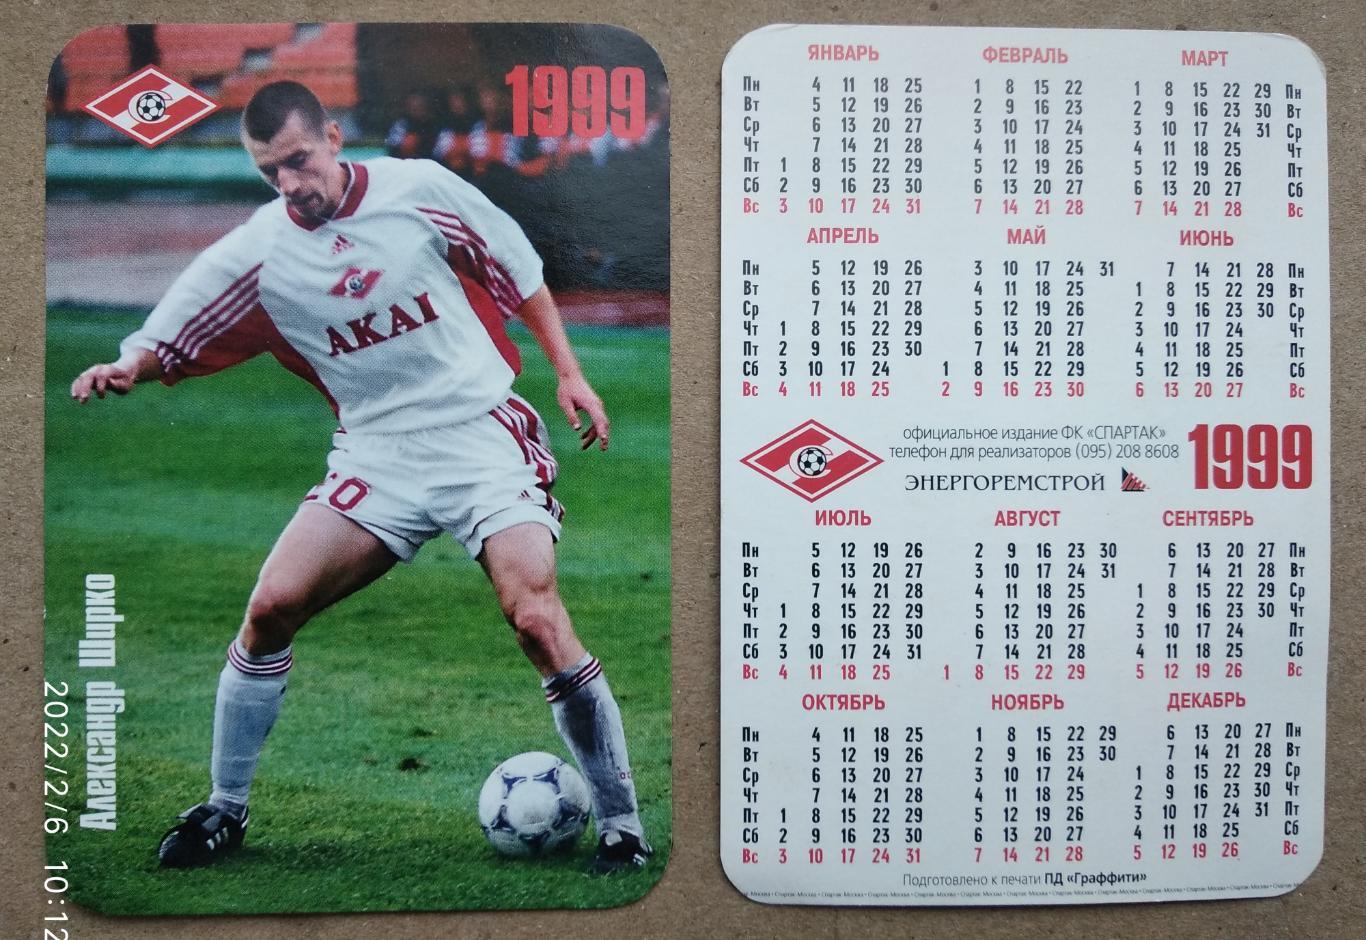 Спартак Москва - Ширко , календарик на 1999 год, официальное издание клуба